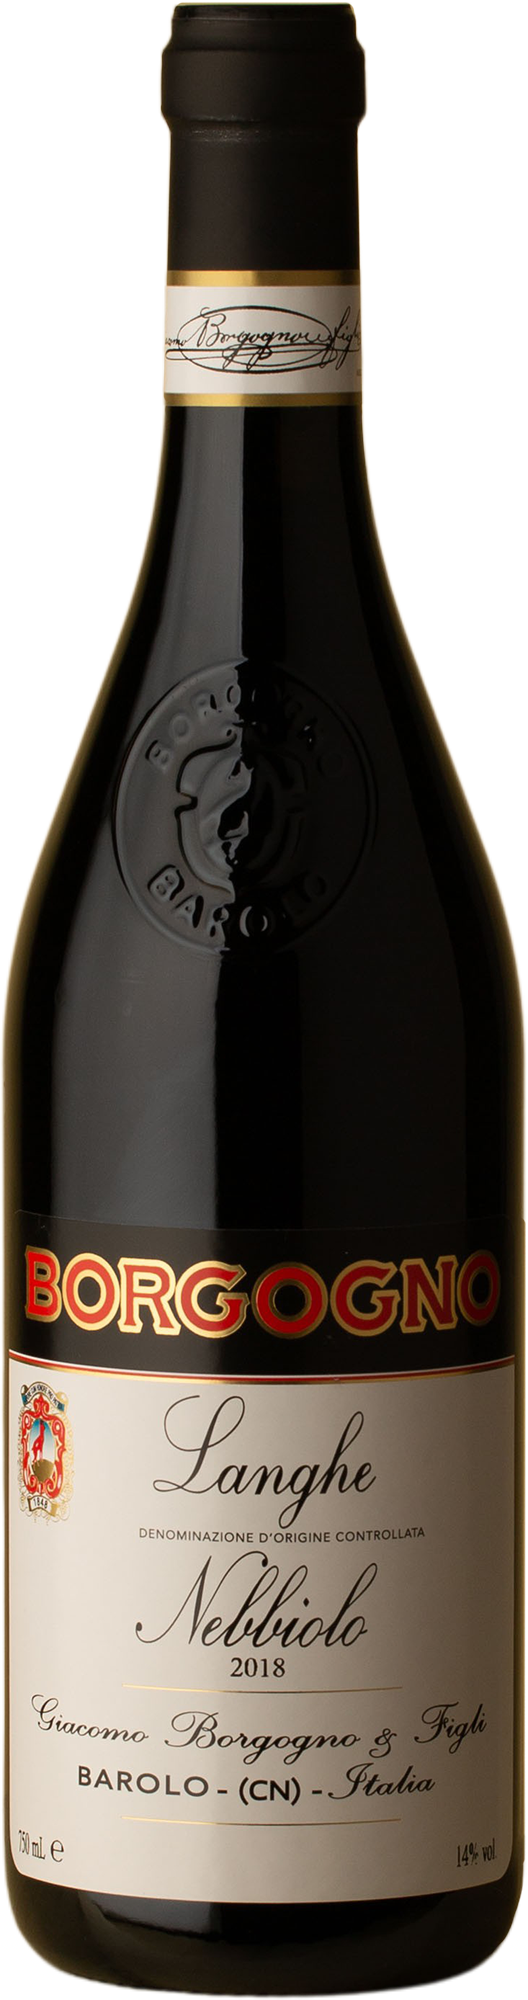 Borgogno - Langhe Nebbiolo 2018 Red Wine